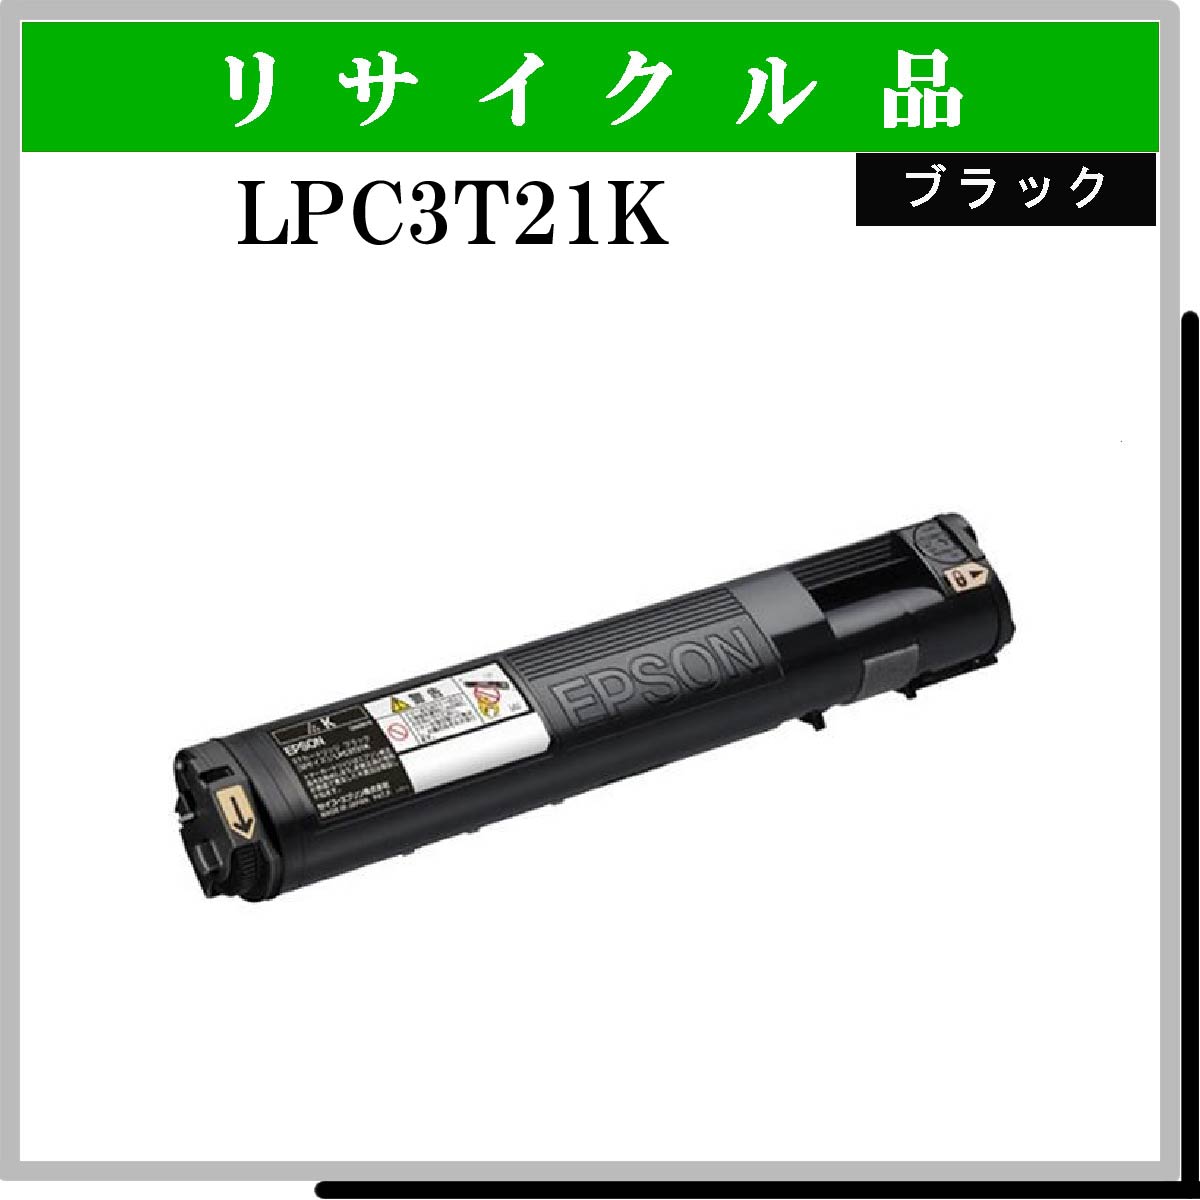 LPC3T21K